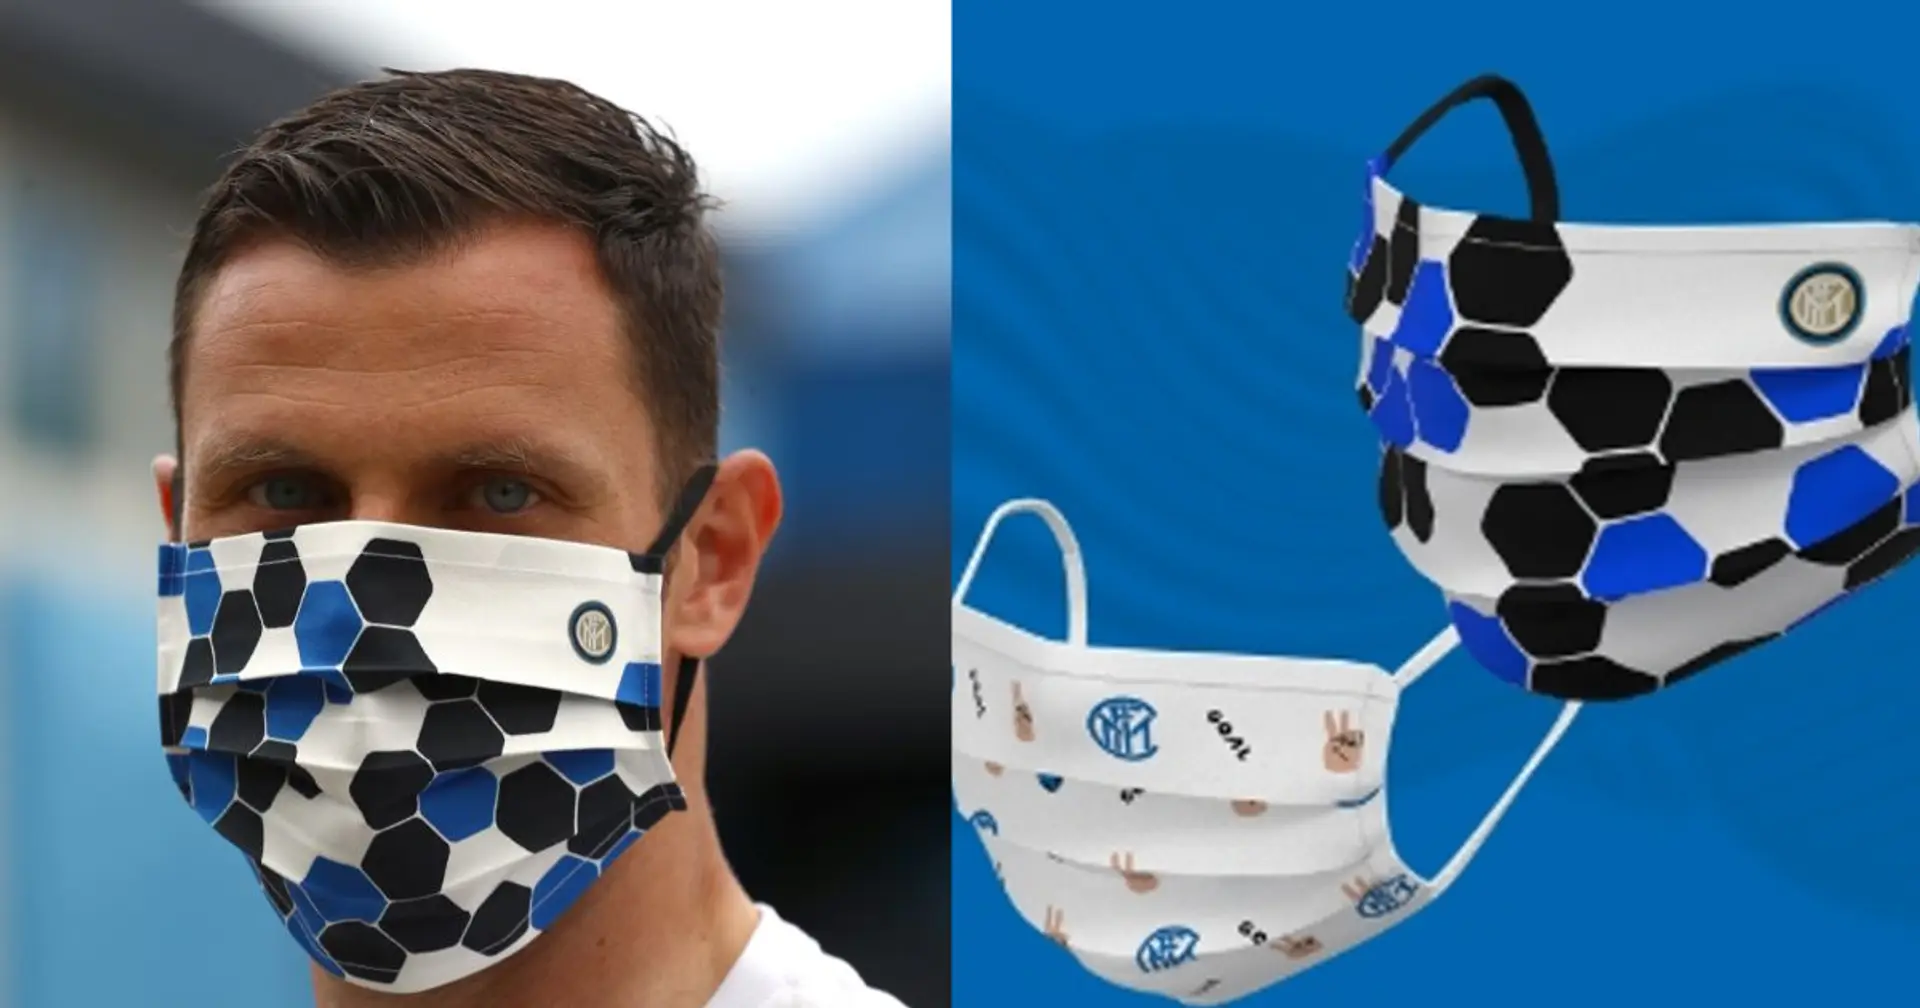 Promossa o bocciata? Cosa ne pensate della mascherina ufficiale dell'Inter? Date un voto da 1 a 10